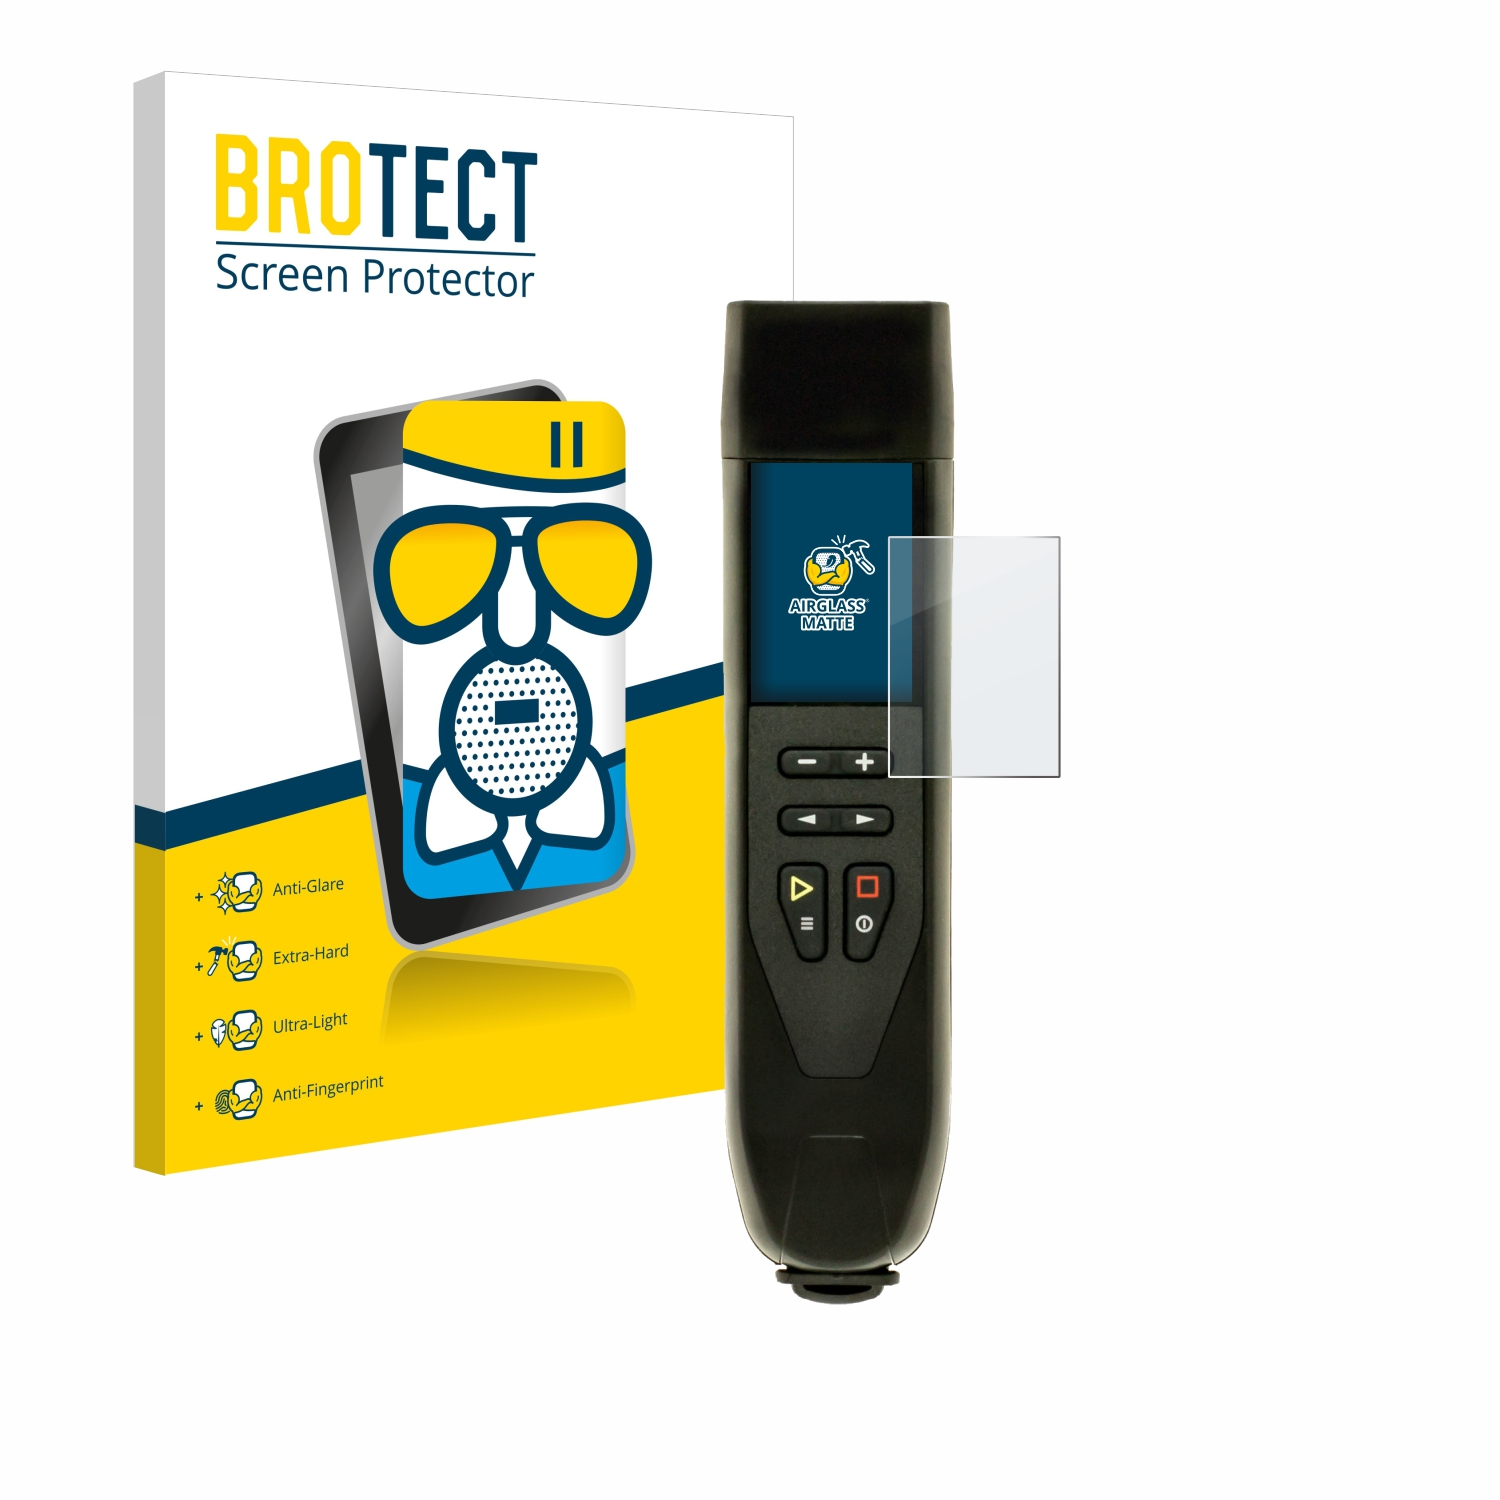 matte Airglass BROTECT Stick RigExpert Schutzfolie(für 230)